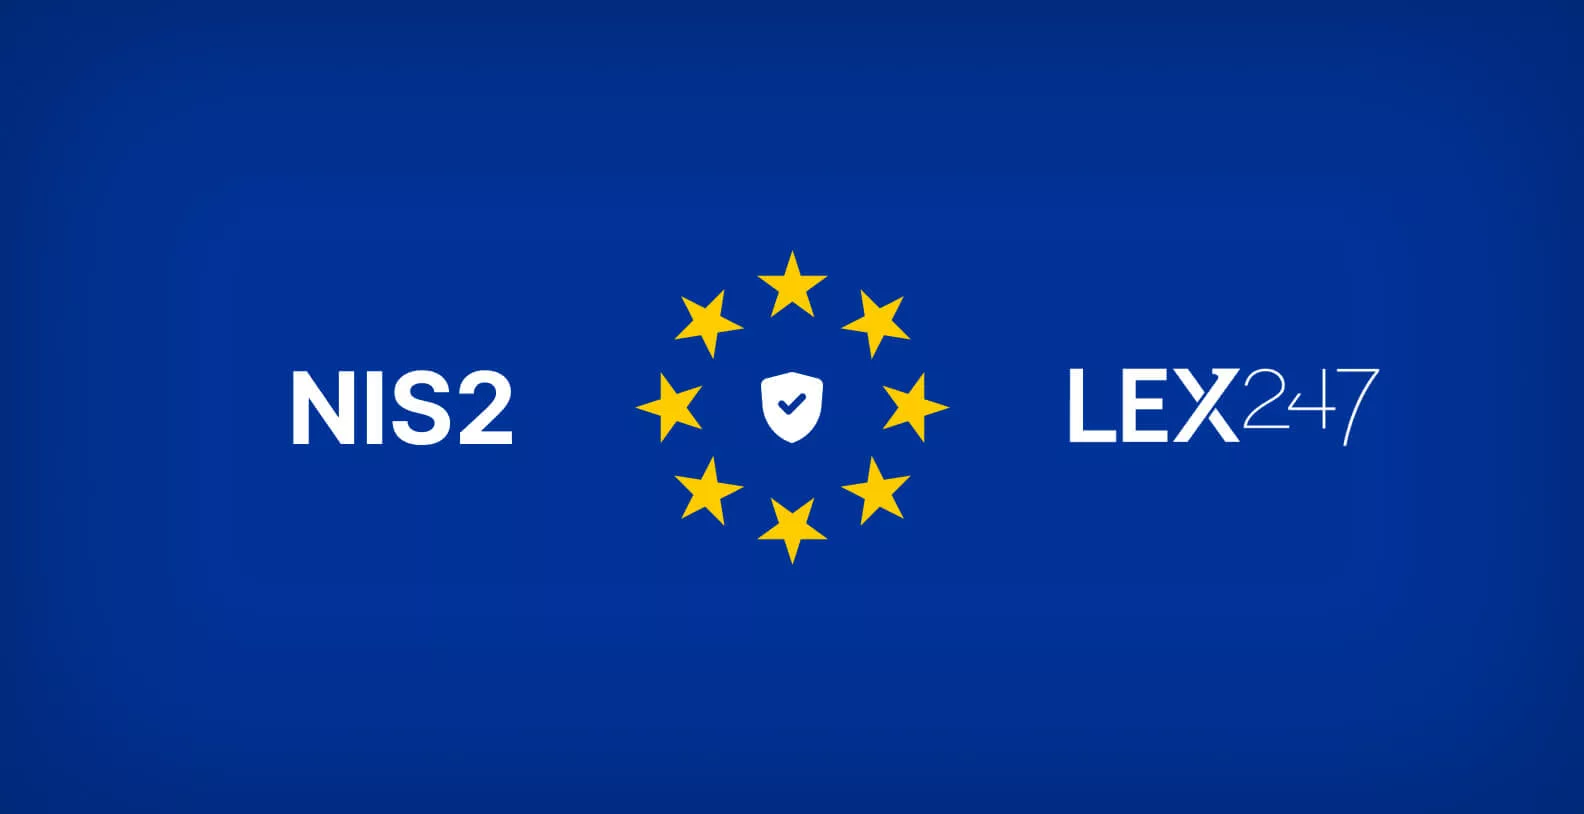 NIS2: LEX247